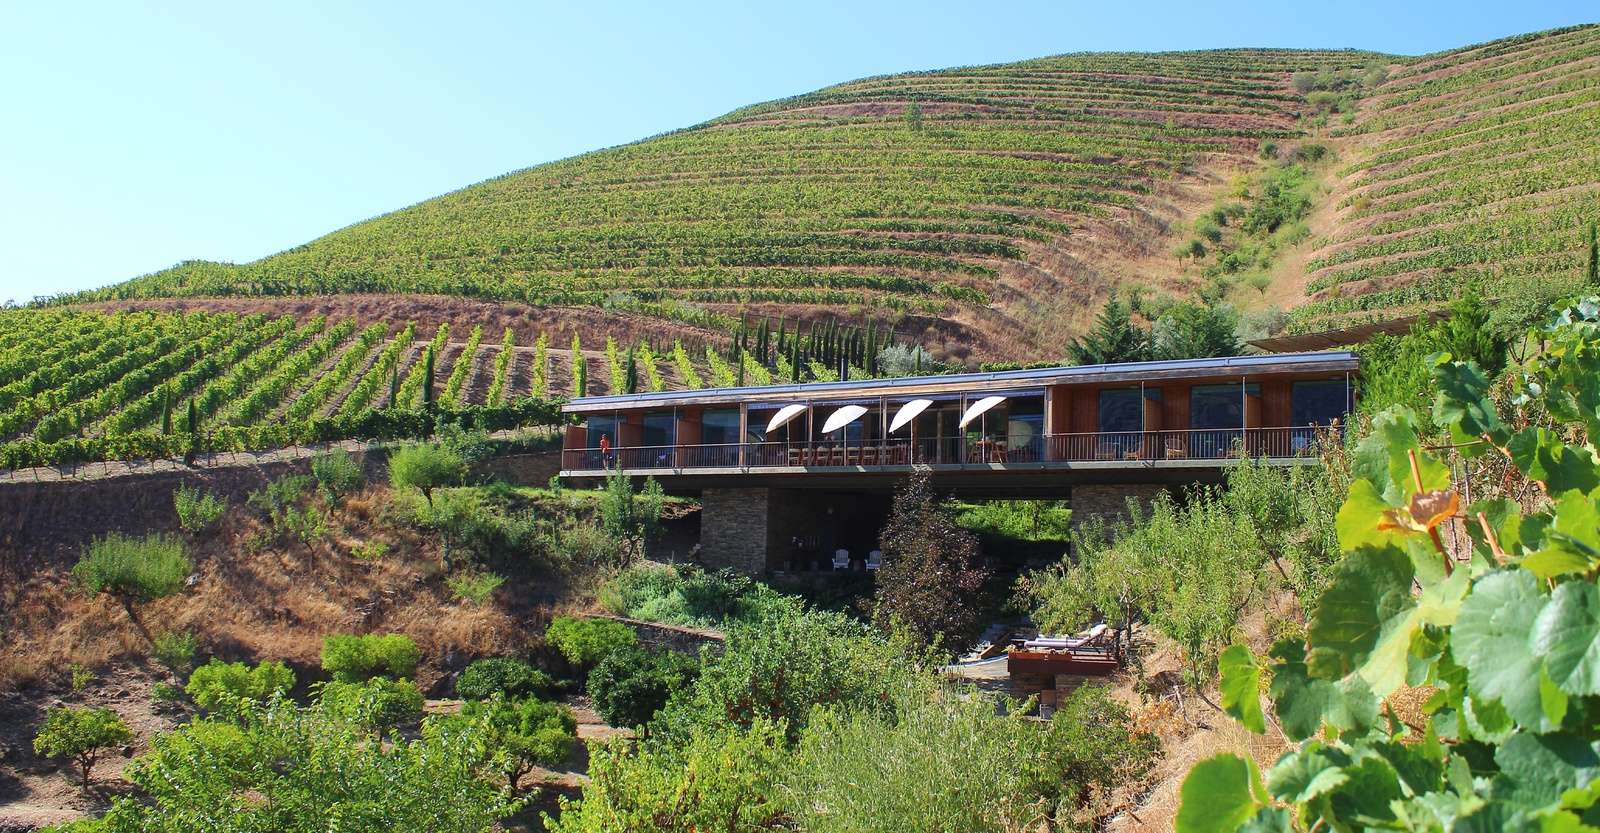 Casa do Rio guesthouse and Quinta do Vallado vineyards, Douro Valley, Portugal.